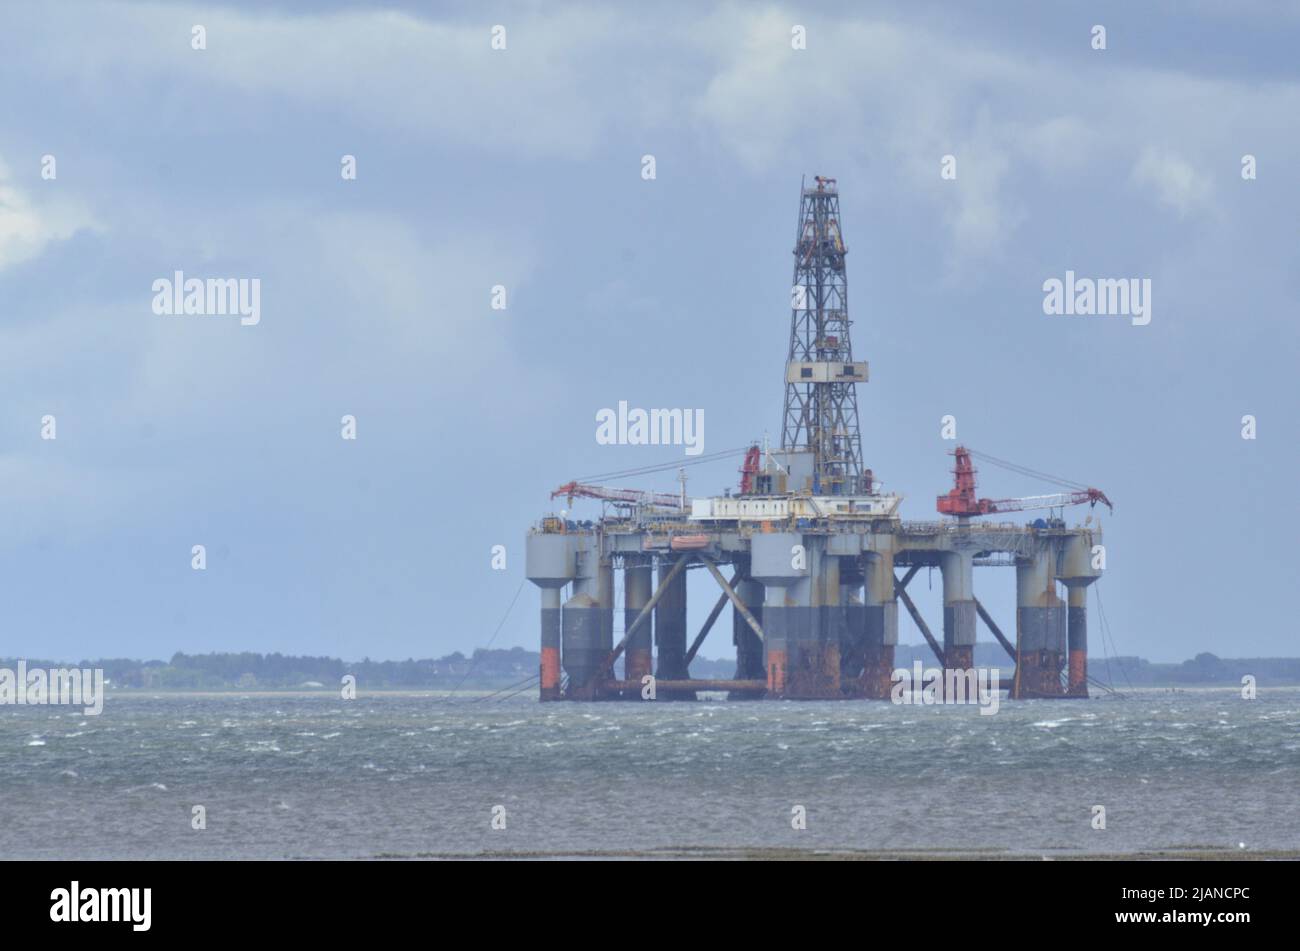 CROMARTY FIRTH, SCHOTTLAND, Großbritannien - Nordseeplattform für Öl und Gas in der Cromarty Firth, Schottland, Großbritannien Stockfoto